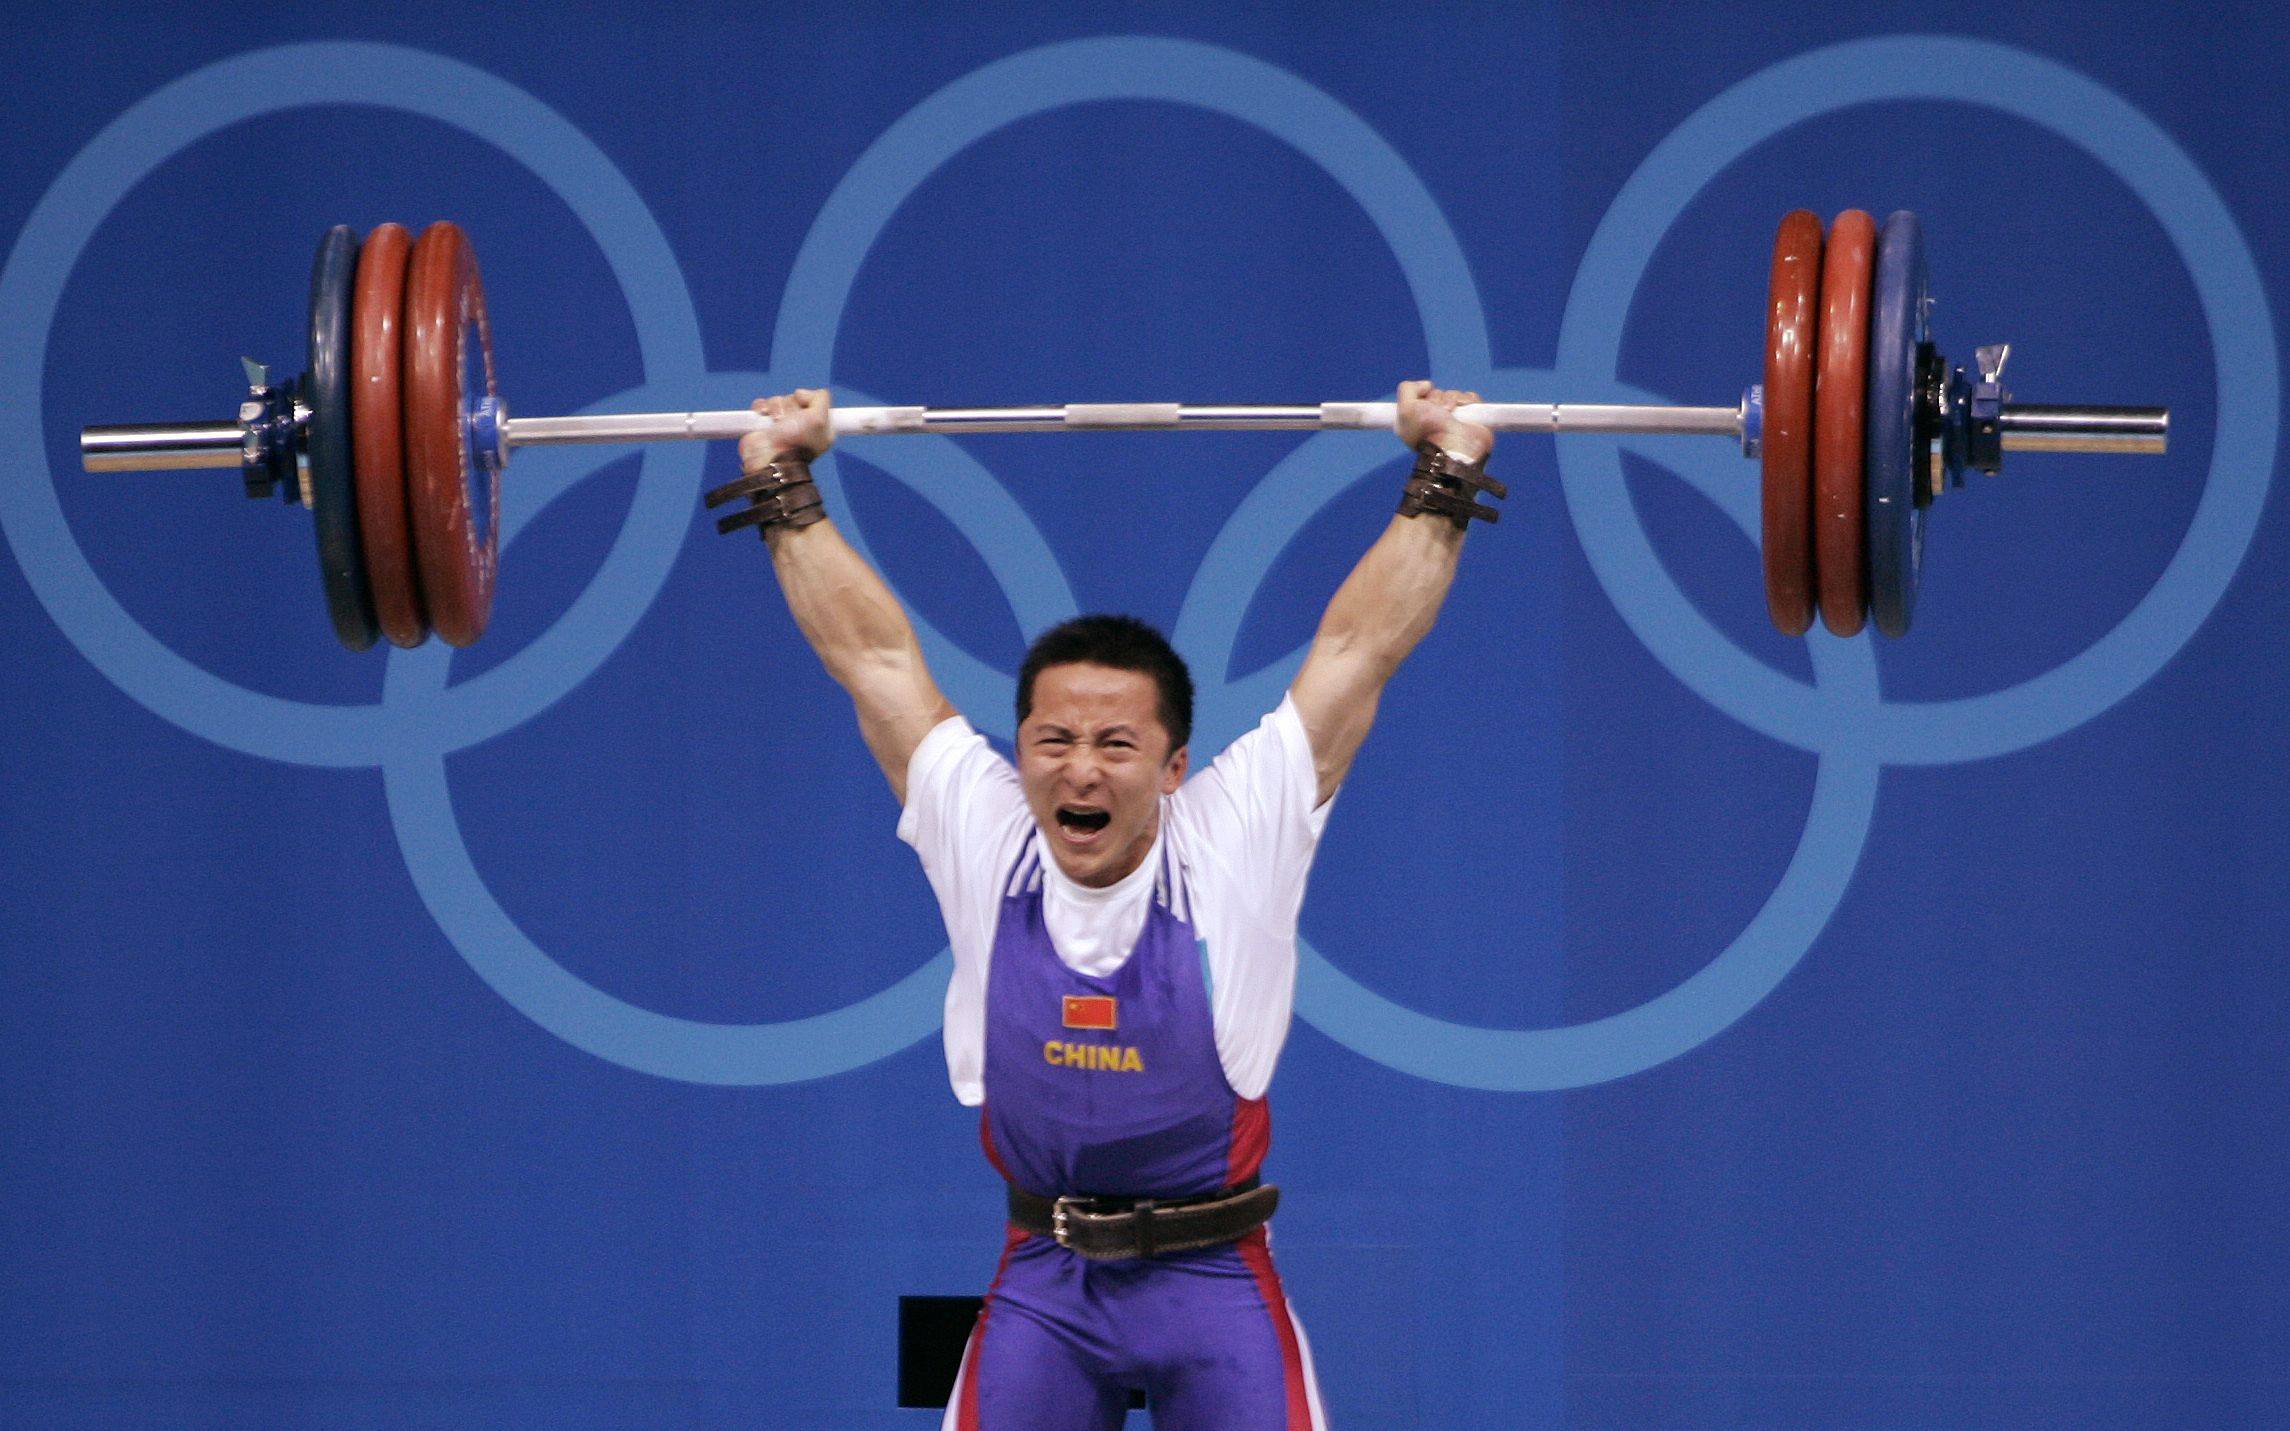 2004年8月16日,石智勇夺得雅典奥运会举重男子62公斤级冠军